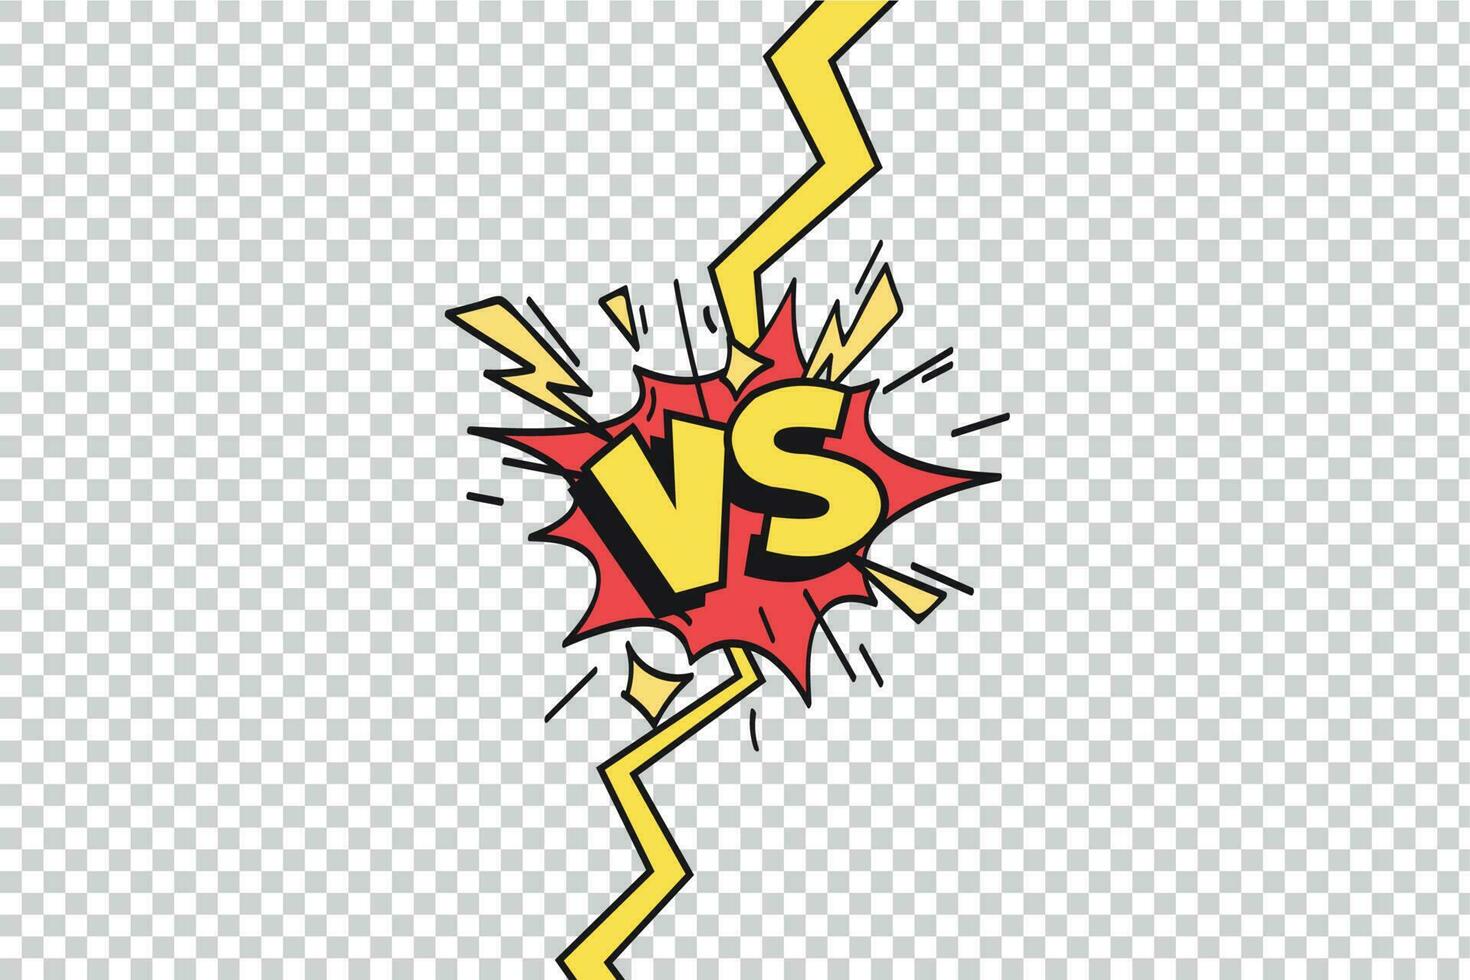 historietas vs marco. versus relámpago rayo borde, cómic luchando duelo y lucha confrontación aislado dibujos animados vector antecedentes